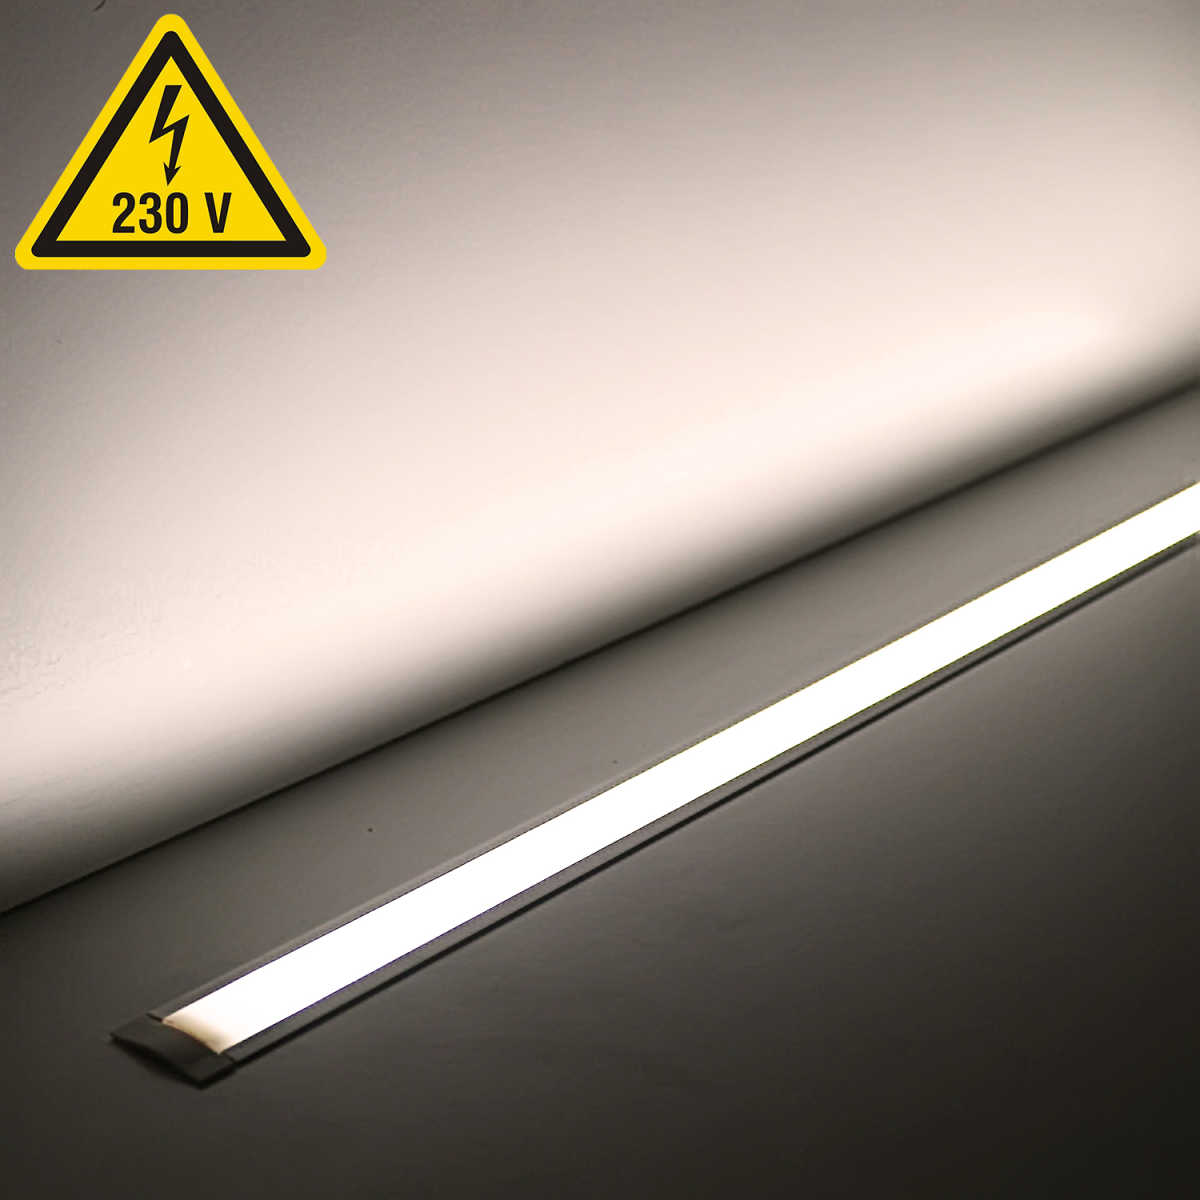 230V LED Einbauleuchte dimmbar für Innen | 120x 2835 LEDs - 16 Watt - 1840 Lumen je Meter | diffus | neutralweiß 4100K 120° IP20 |